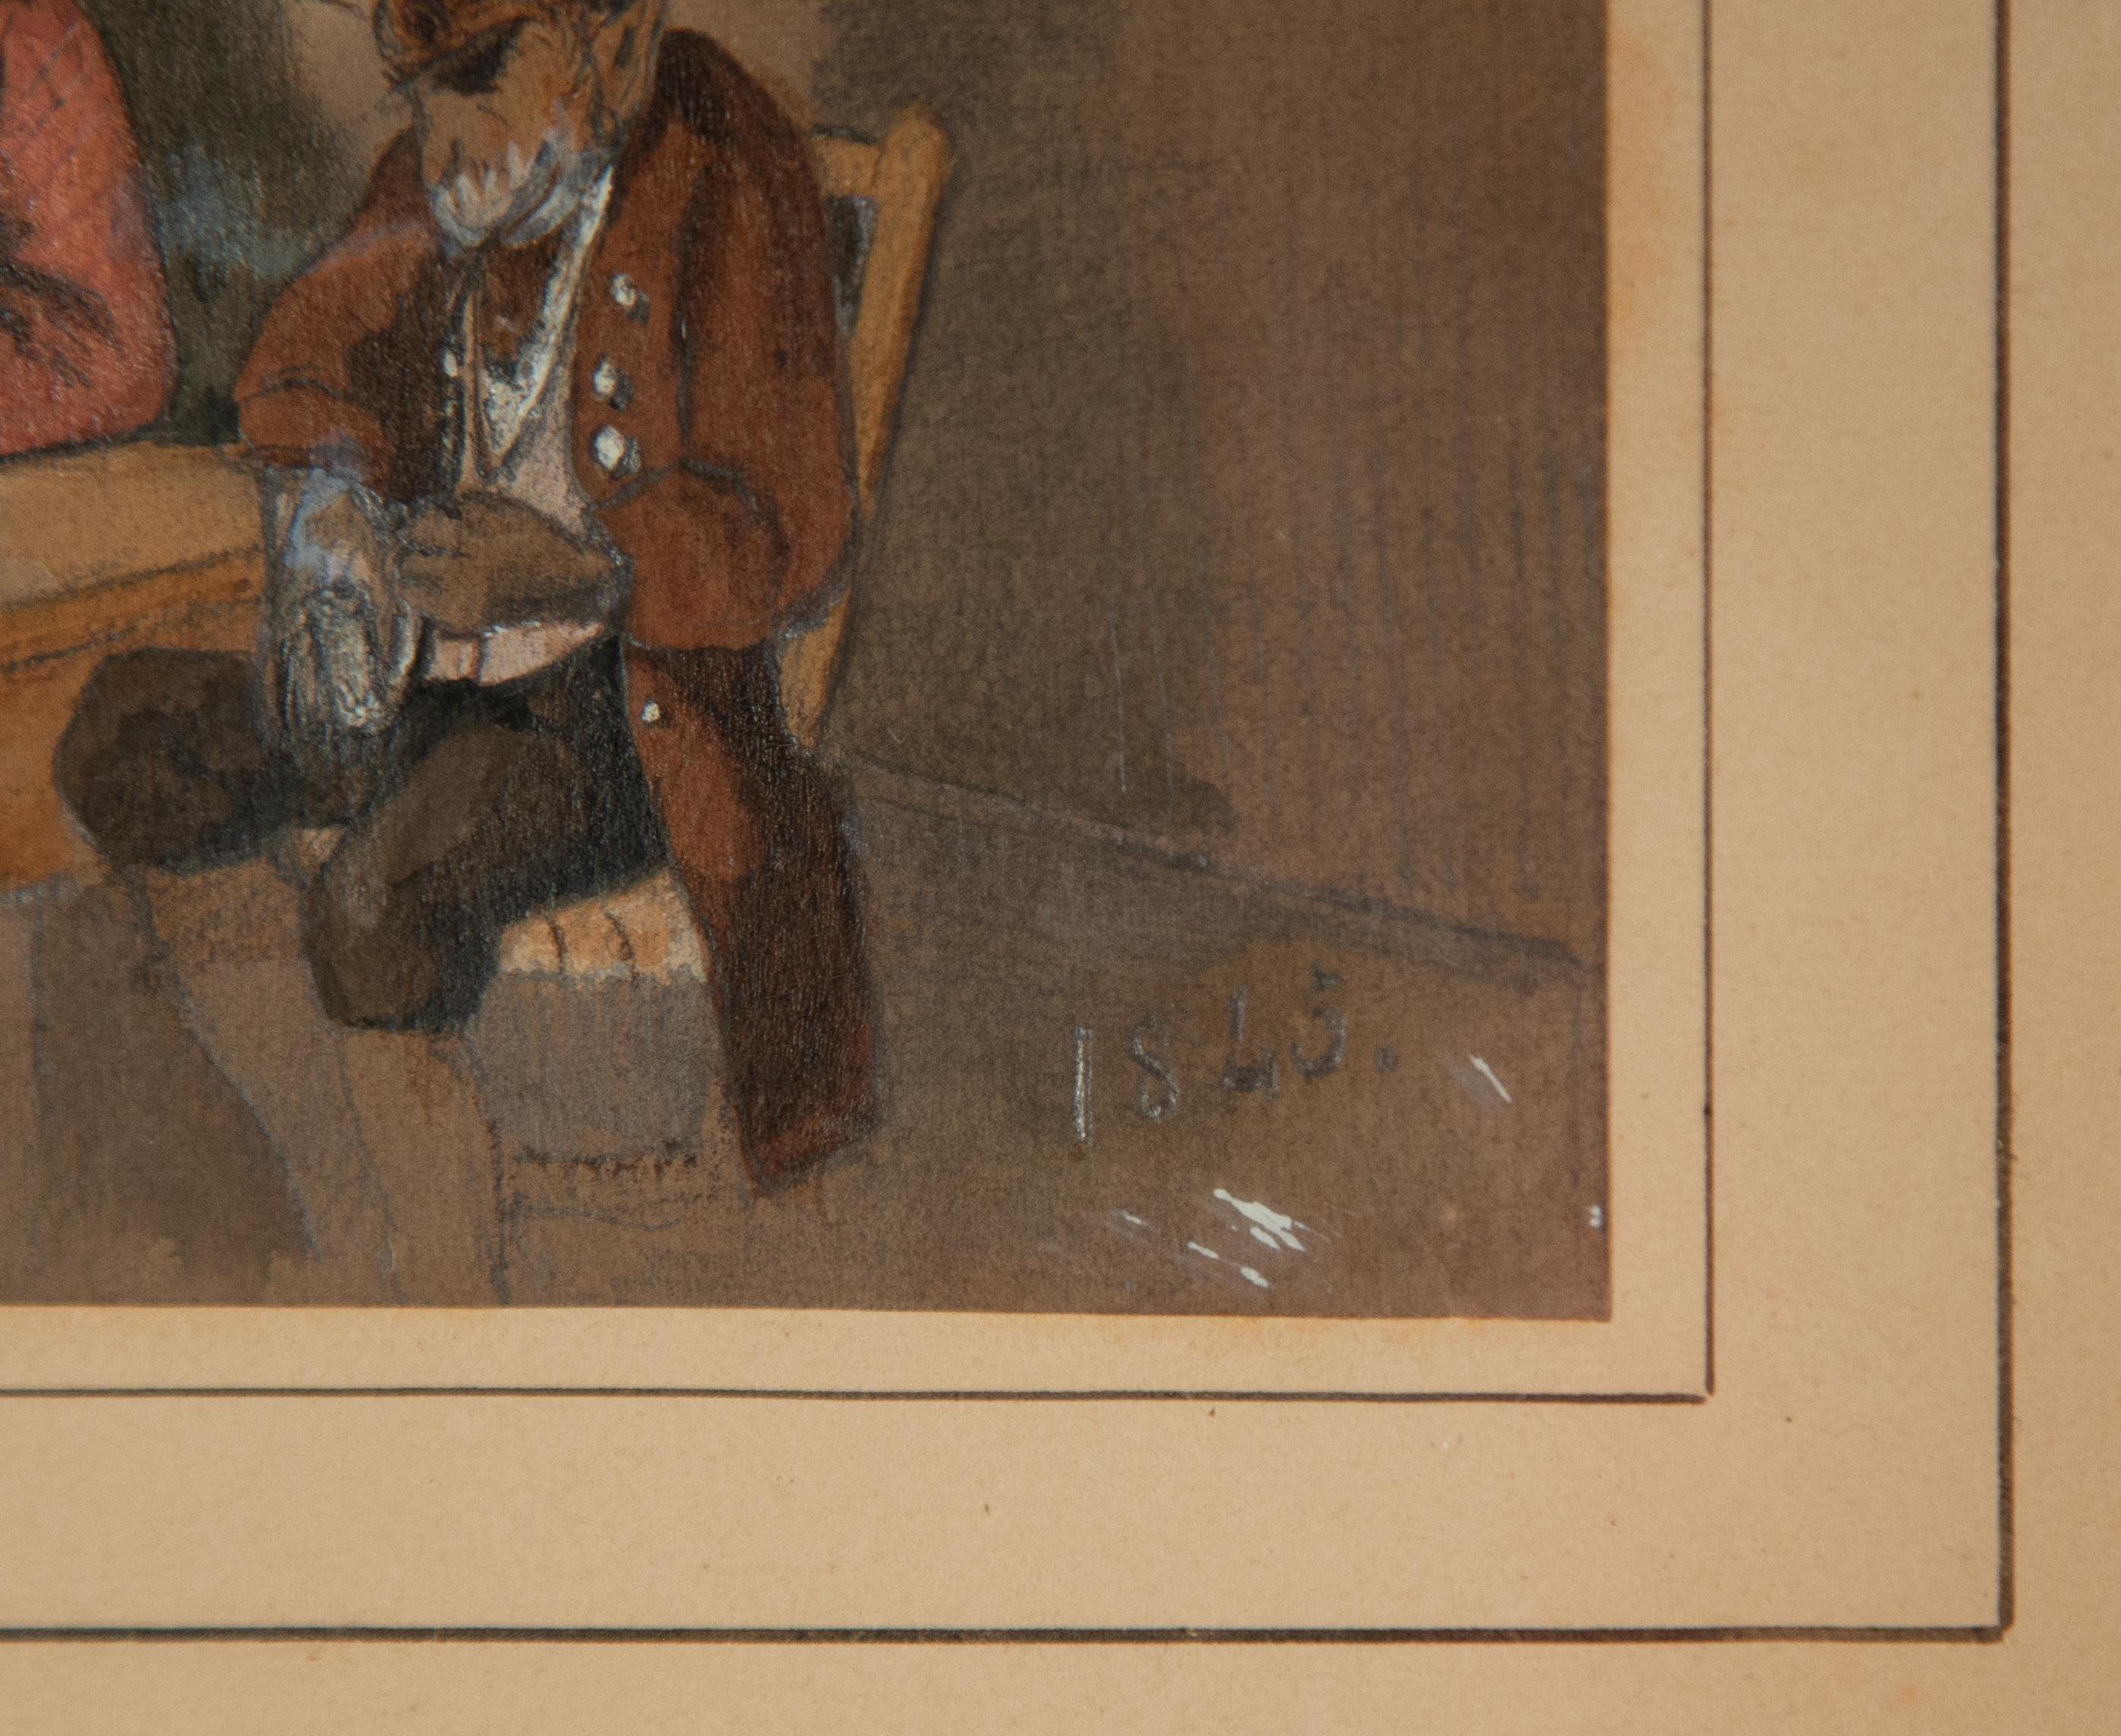 deutsches Aquarell/Gouache des 19. Jahrhunderts mit Affen in einer Taverne, um 1845. Unsigniert, aber datiert 1845. Im alten Eichenrahmen mit dem Originalglas und rückseitig mit Papier und Siegel versehen. Eine sehr detaillierte Innenraumszene mit